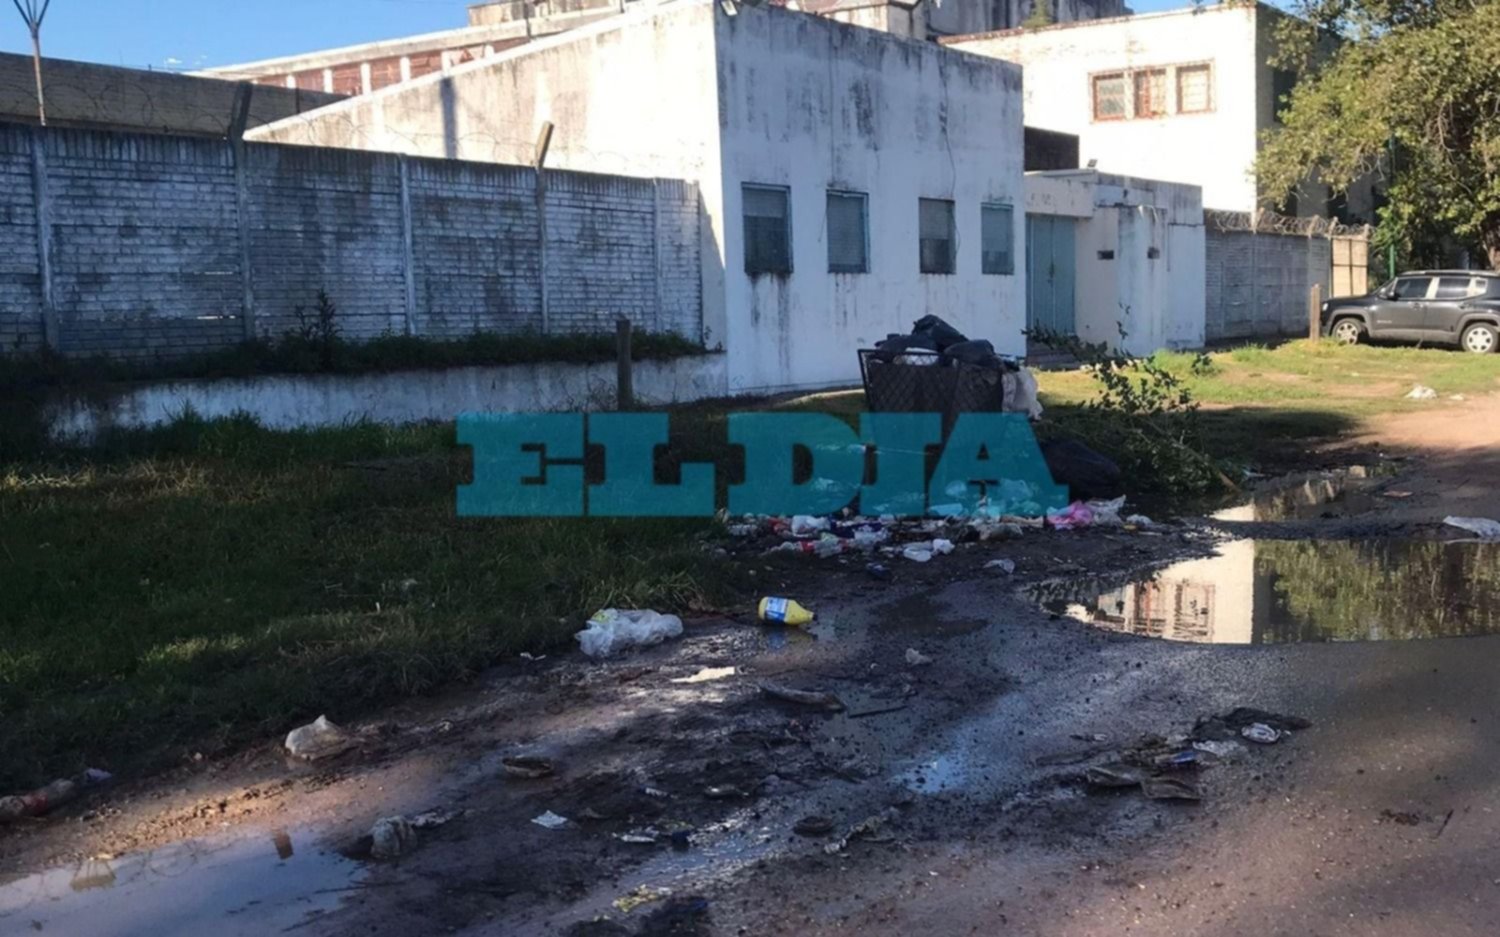 Baches, basura y desborde cloacal: reclamo en barrio platense por una calle en estado "calamitoso"